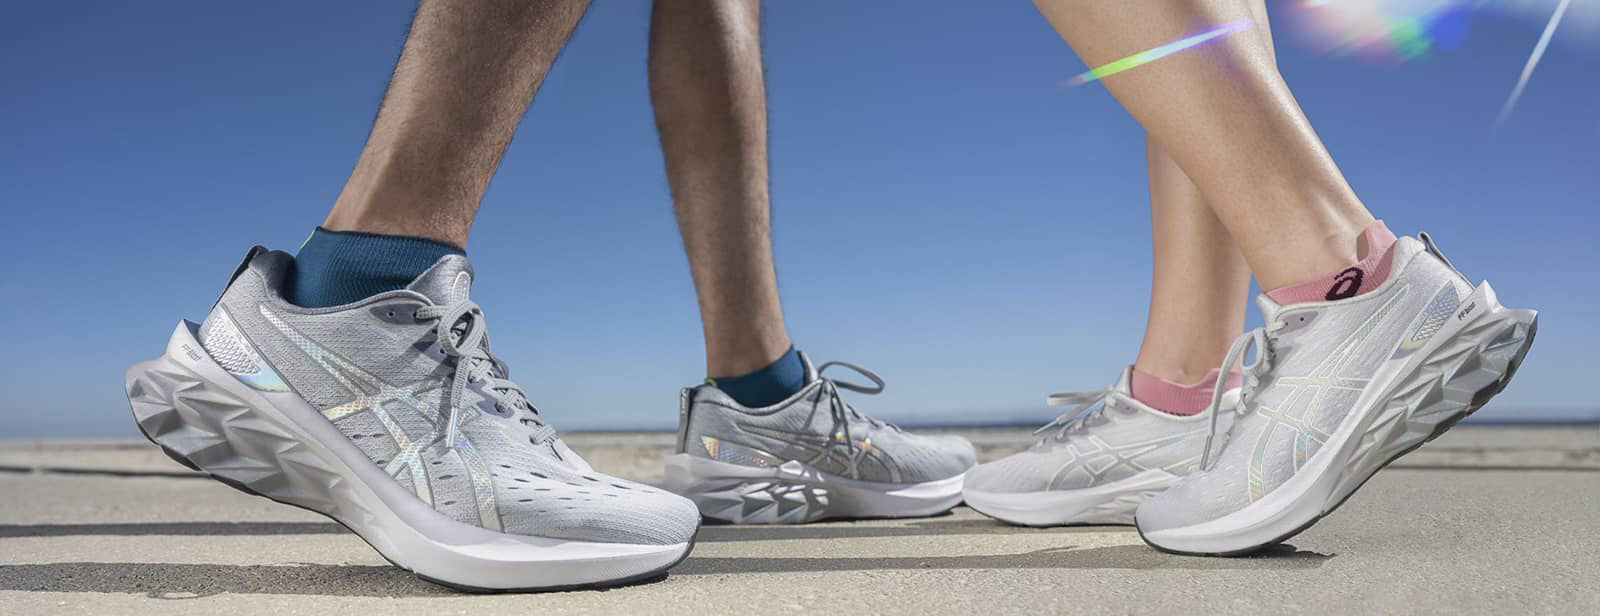 Laufschuhe saubermachen | Tipps für saubere Laufschuhe | ASICS DE